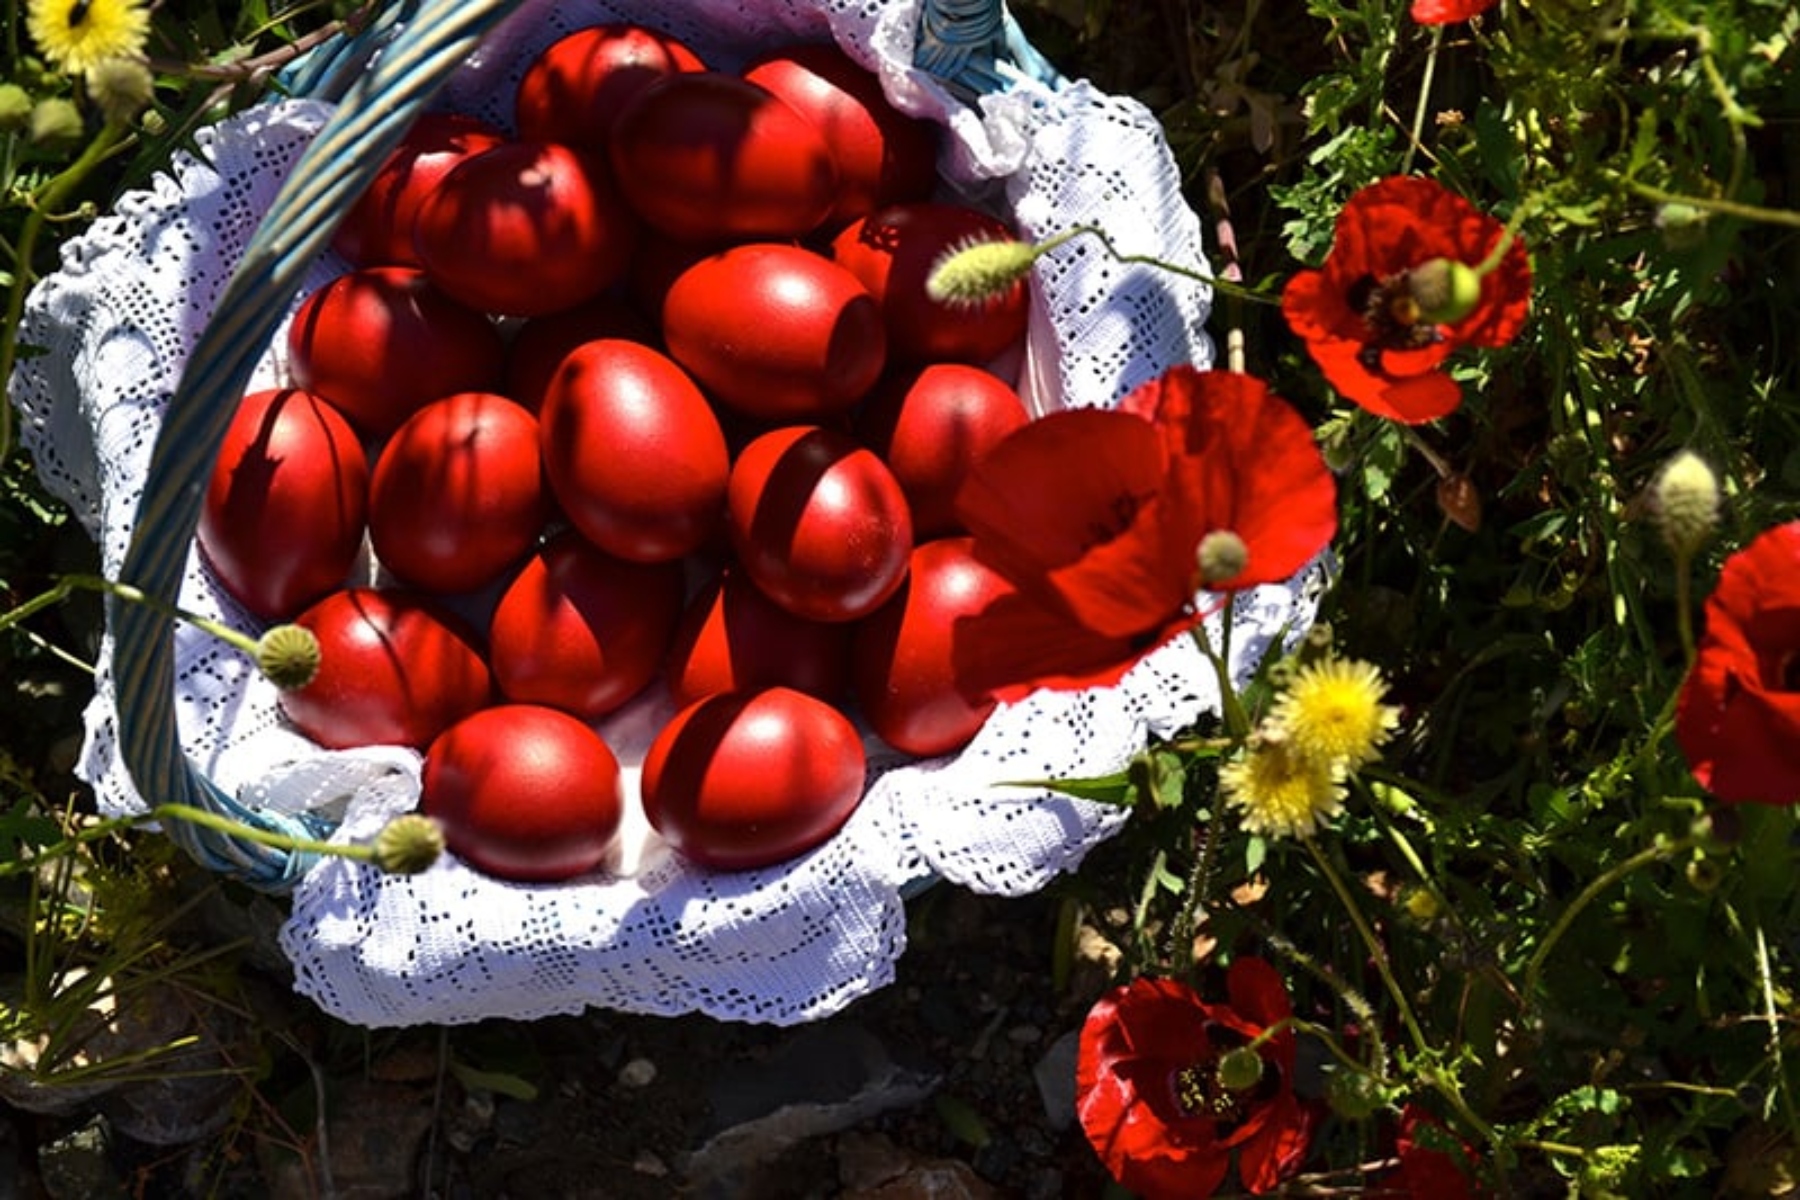 Βάψιμο αυγών: Μια φυσική εναλλακτική για κατακόκκινα αυγά